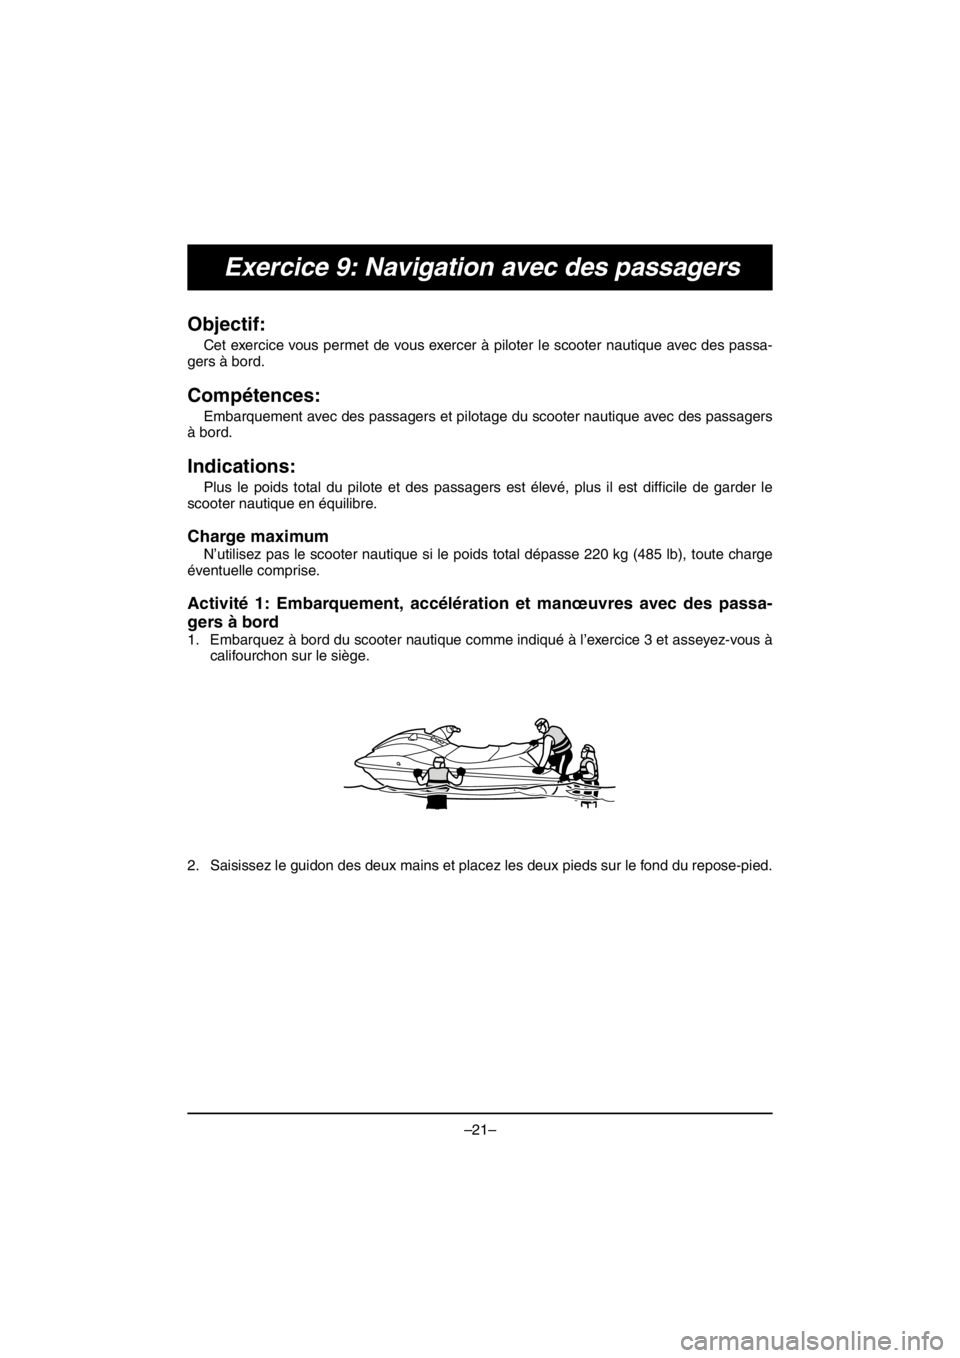 YAMAHA EX DELUXE 2017  Betriebsanleitungen (in German) –21–
Exercice 9: Navigation avec des passagers
Objectif: 
Cet exercice vous permet de vous exercer à piloter le scooter nautique avec des passa-
gers à bord.
Compétences: 
Embarquement avec des